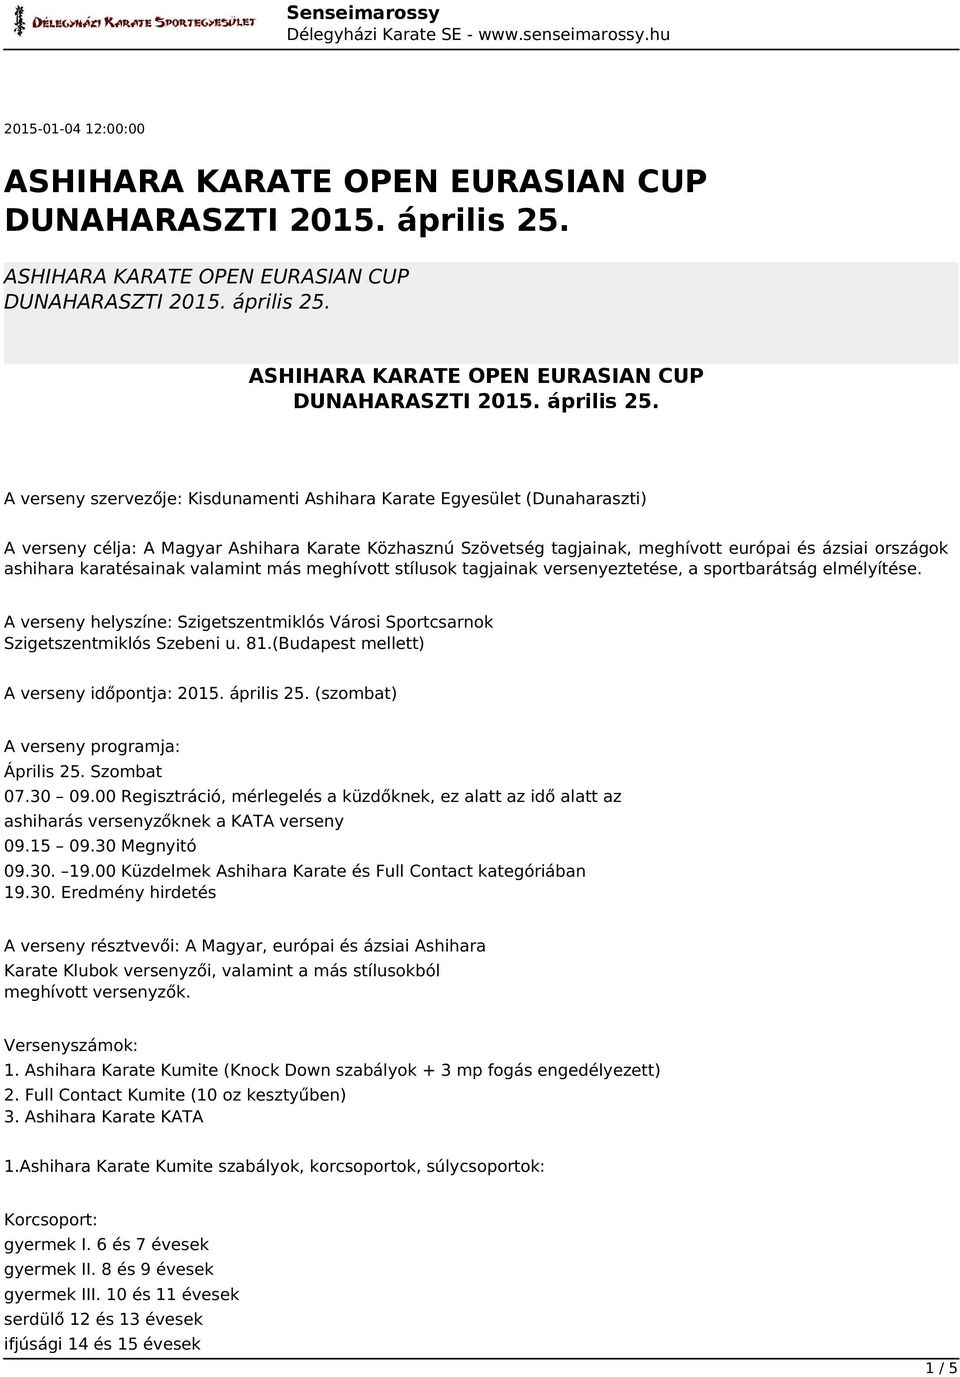 A verseny helyszíne: Szigetszentmiklós Városi Sportcsarnok Szigetszentmiklós Szebeni u. 81.(Budapest mellett) A verseny időpontja: 2015. április 25. (szombat) A verseny programja: Április 25.